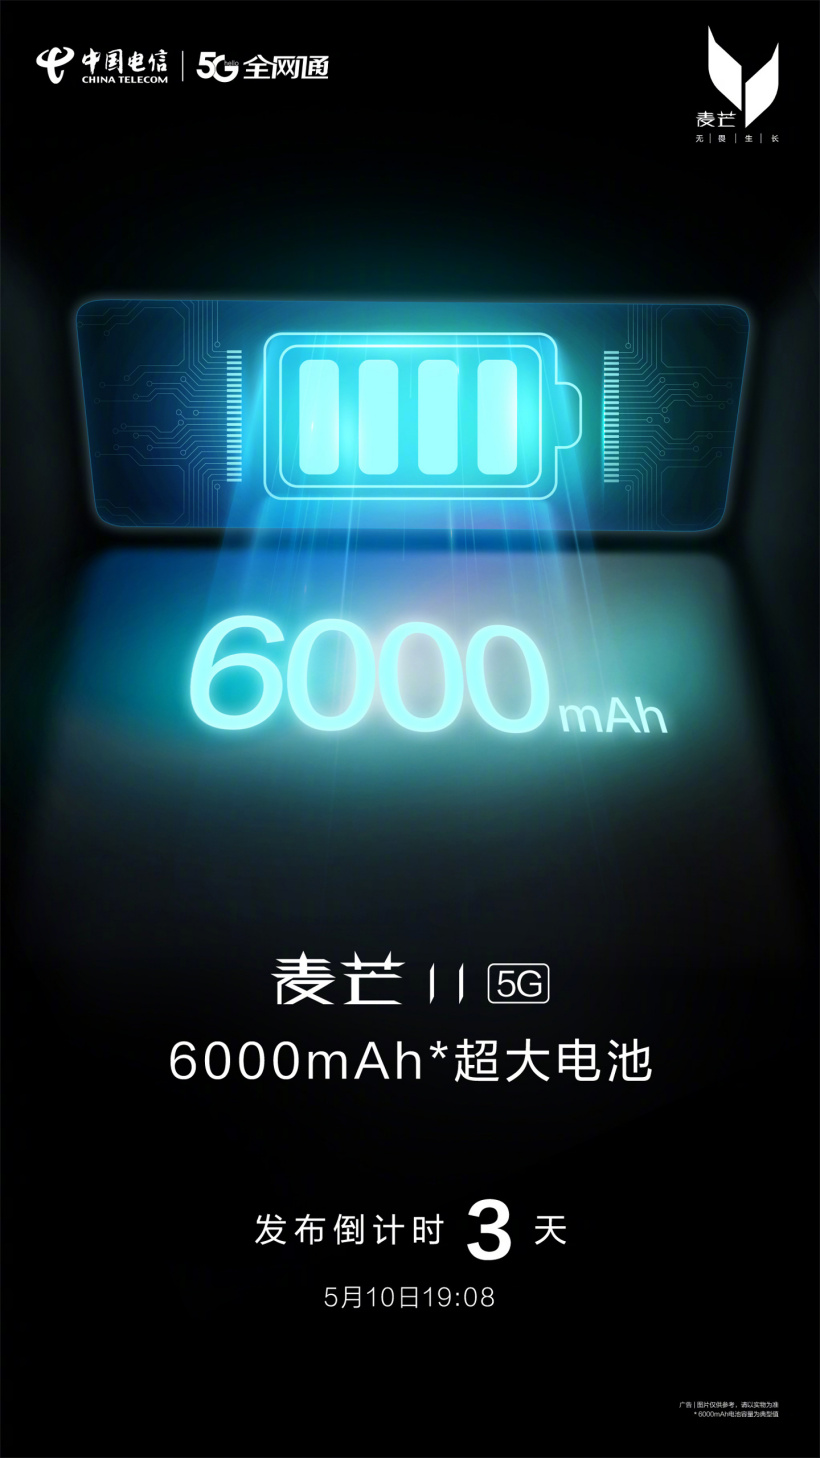 中国电信麦芒11官宣5月10日发布，配备6000mAh容量电池